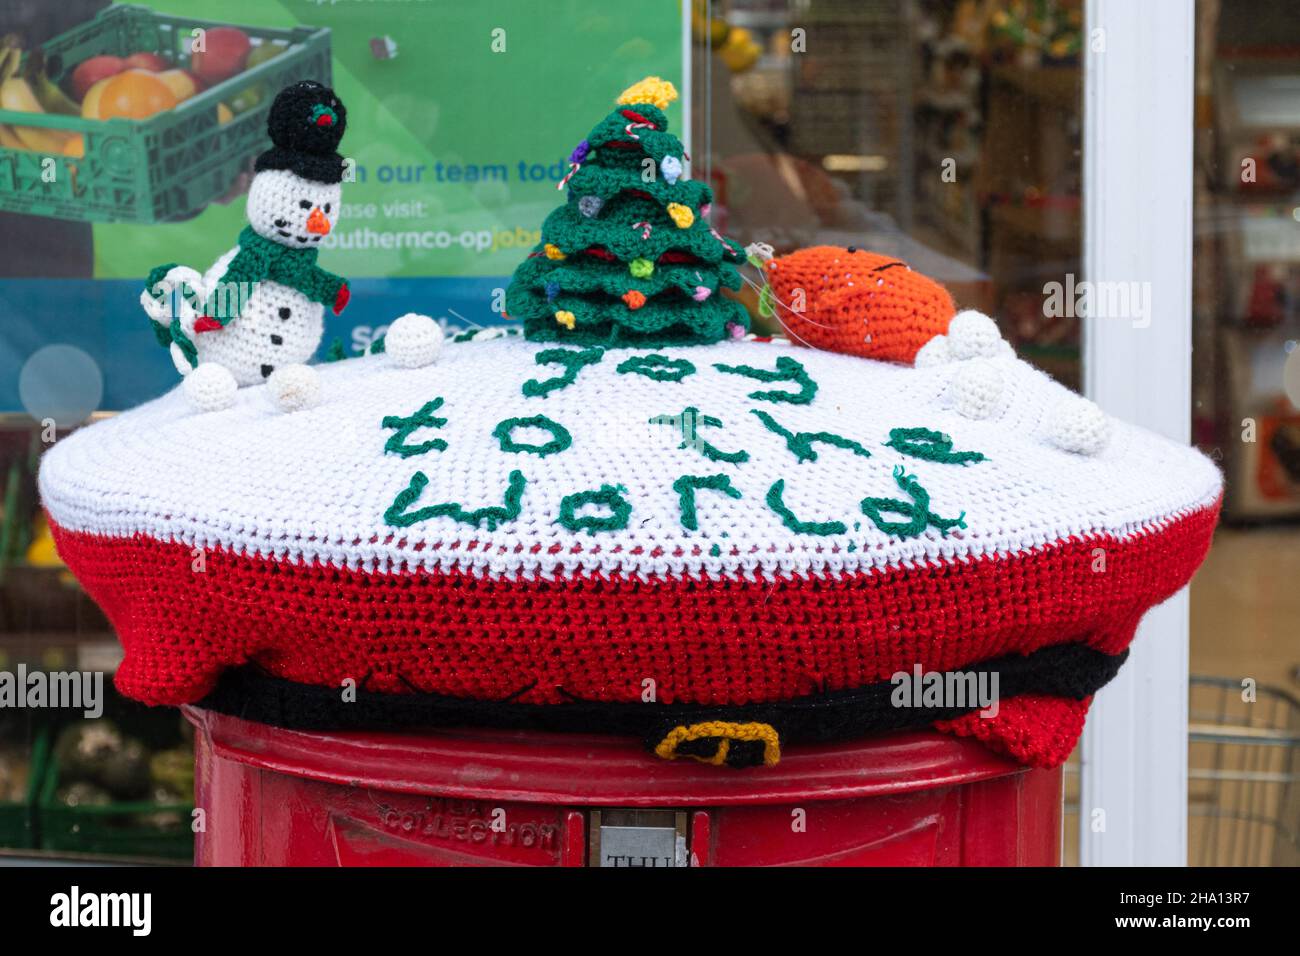 Bombenangriffe auf das Garn, Weihnachts-Schneeszene mit gestricktem Schneemann und Weihnachtsbaum auf einem Briefkasten, Großbritannien Stockfoto